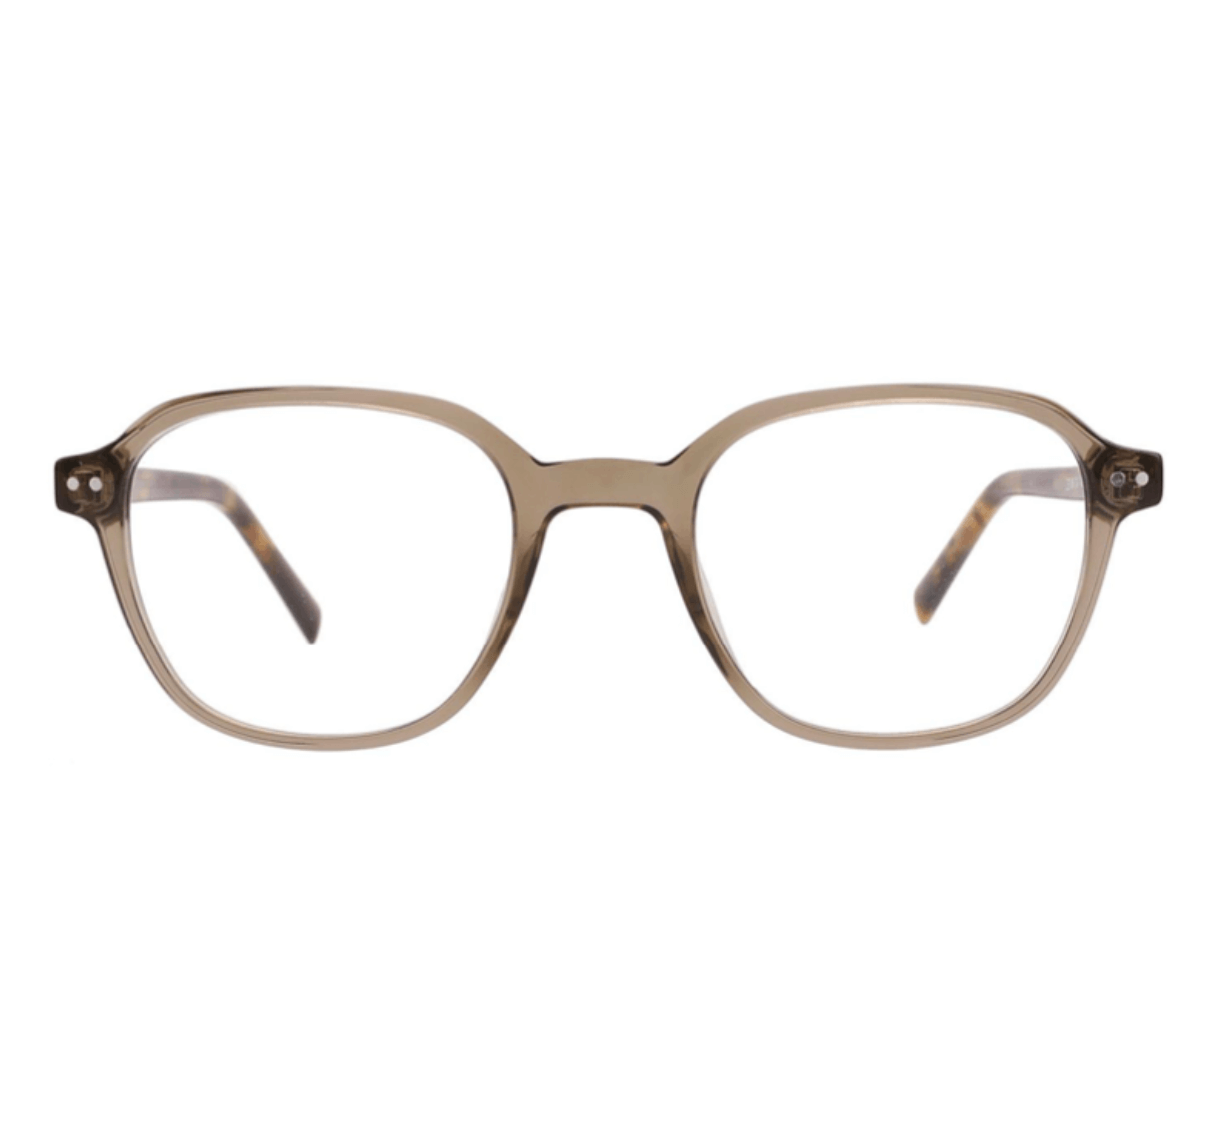 Wholesale glasses frames acetate, glasses frames manufacturer, customized glasses frames